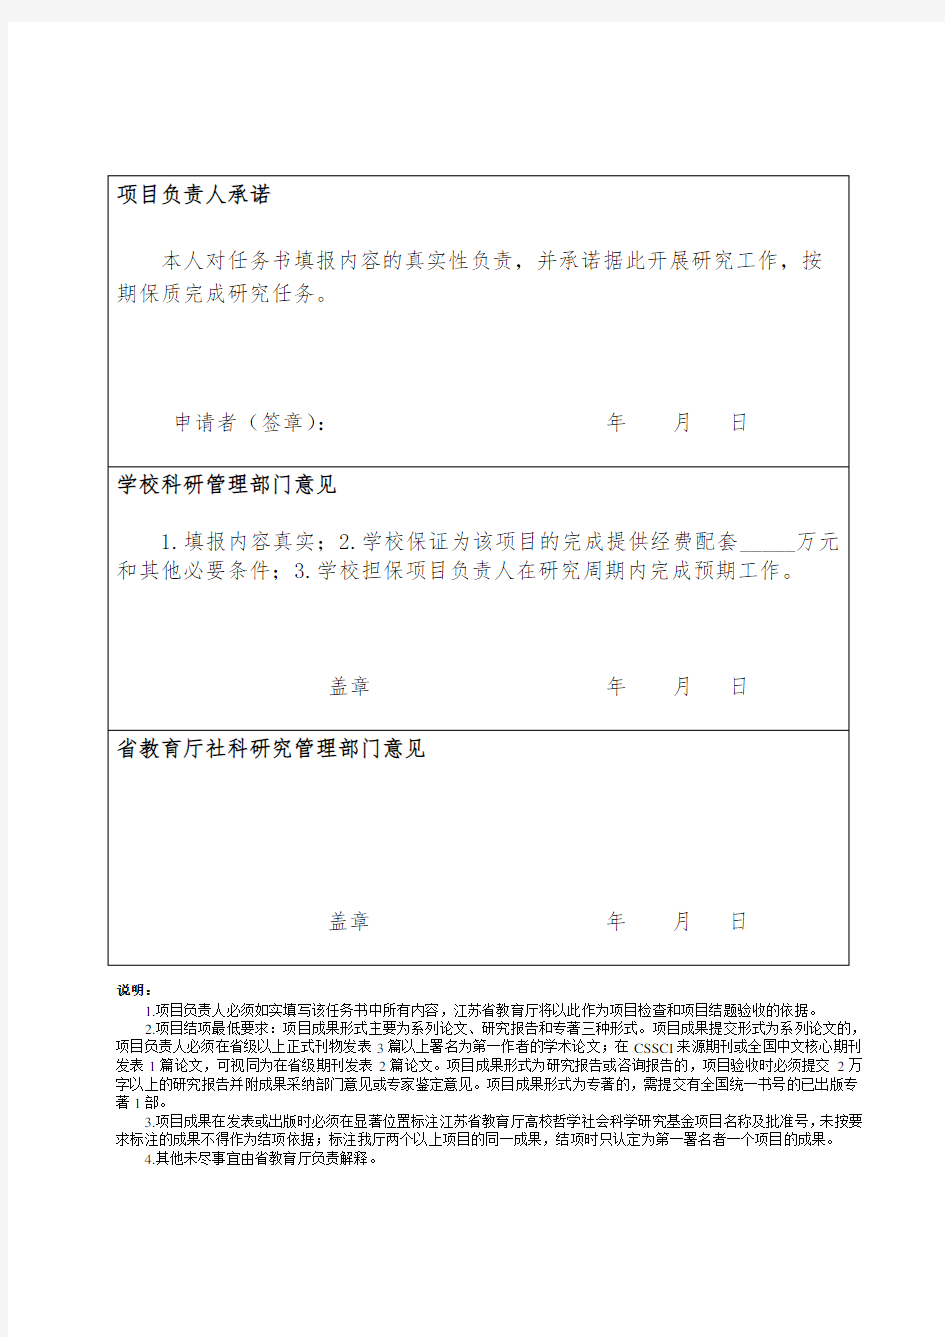 江苏高校哲学社会科学研究项目任务书